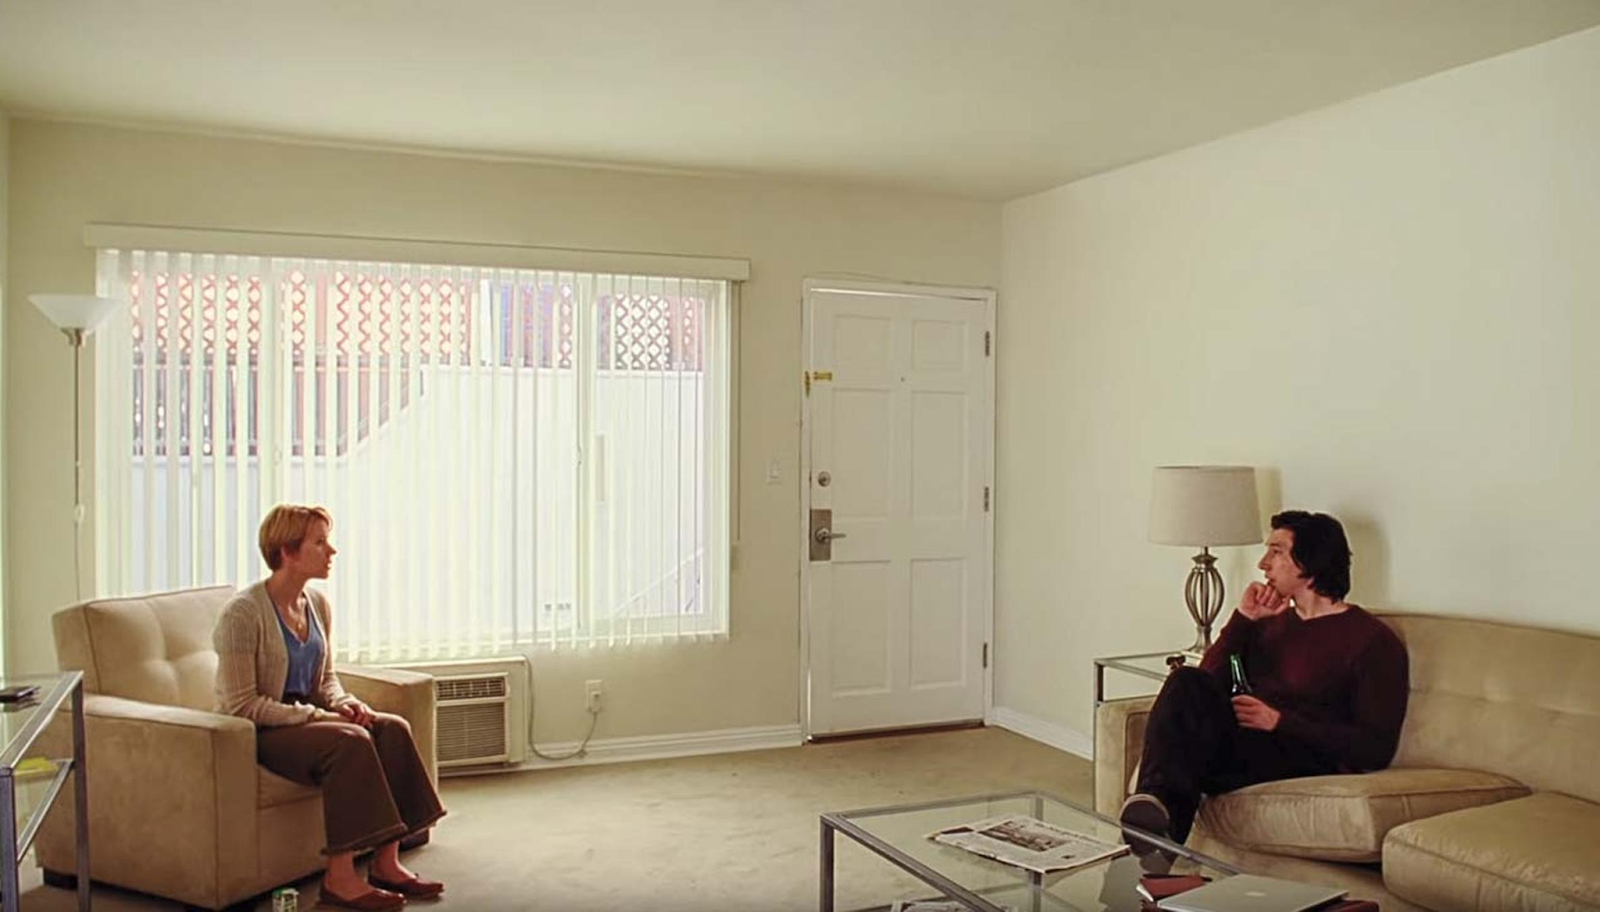 Câu Chuyện Hôn Nhân: Marriage Story - Phim tình cảm trên Netflix cực hay